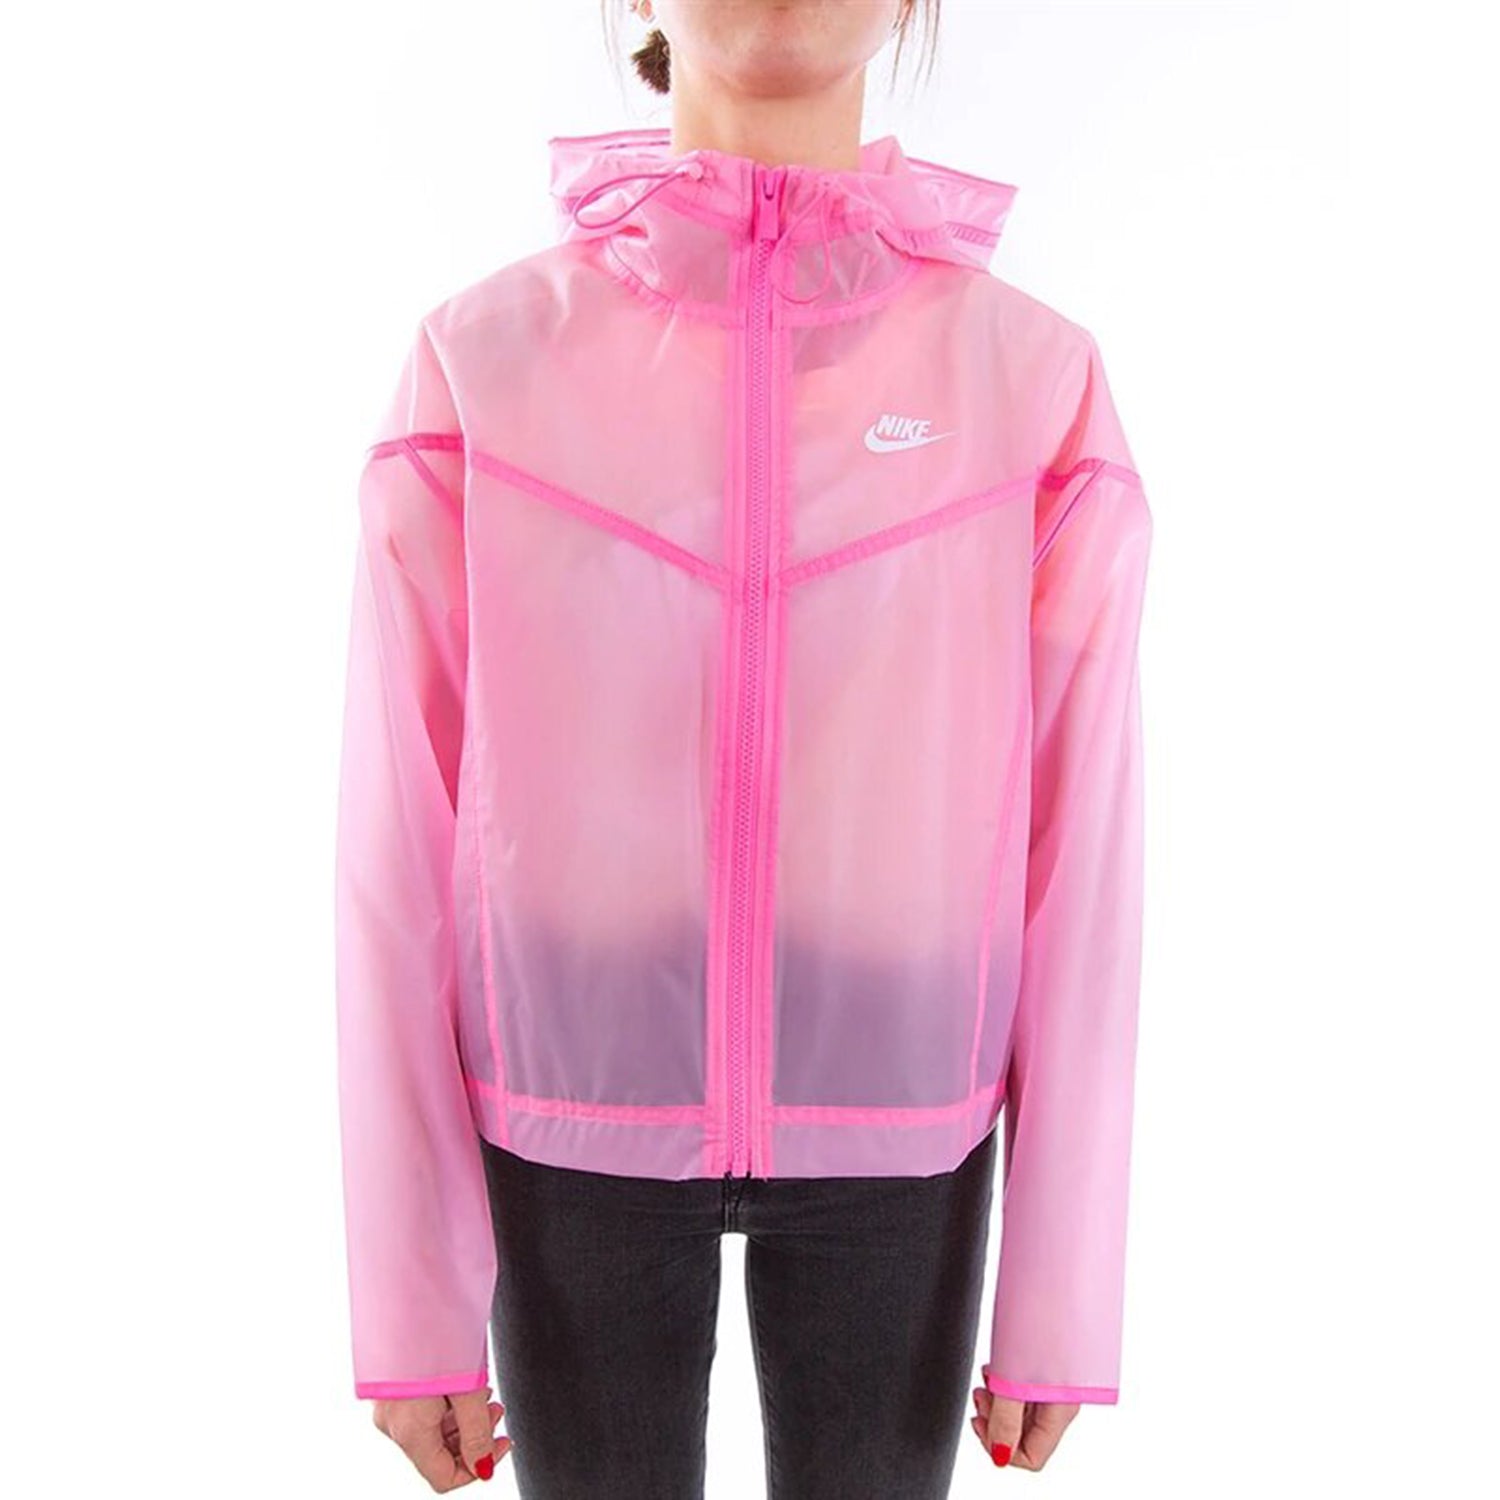 Nike Women's Sportswear Windrunner Pink